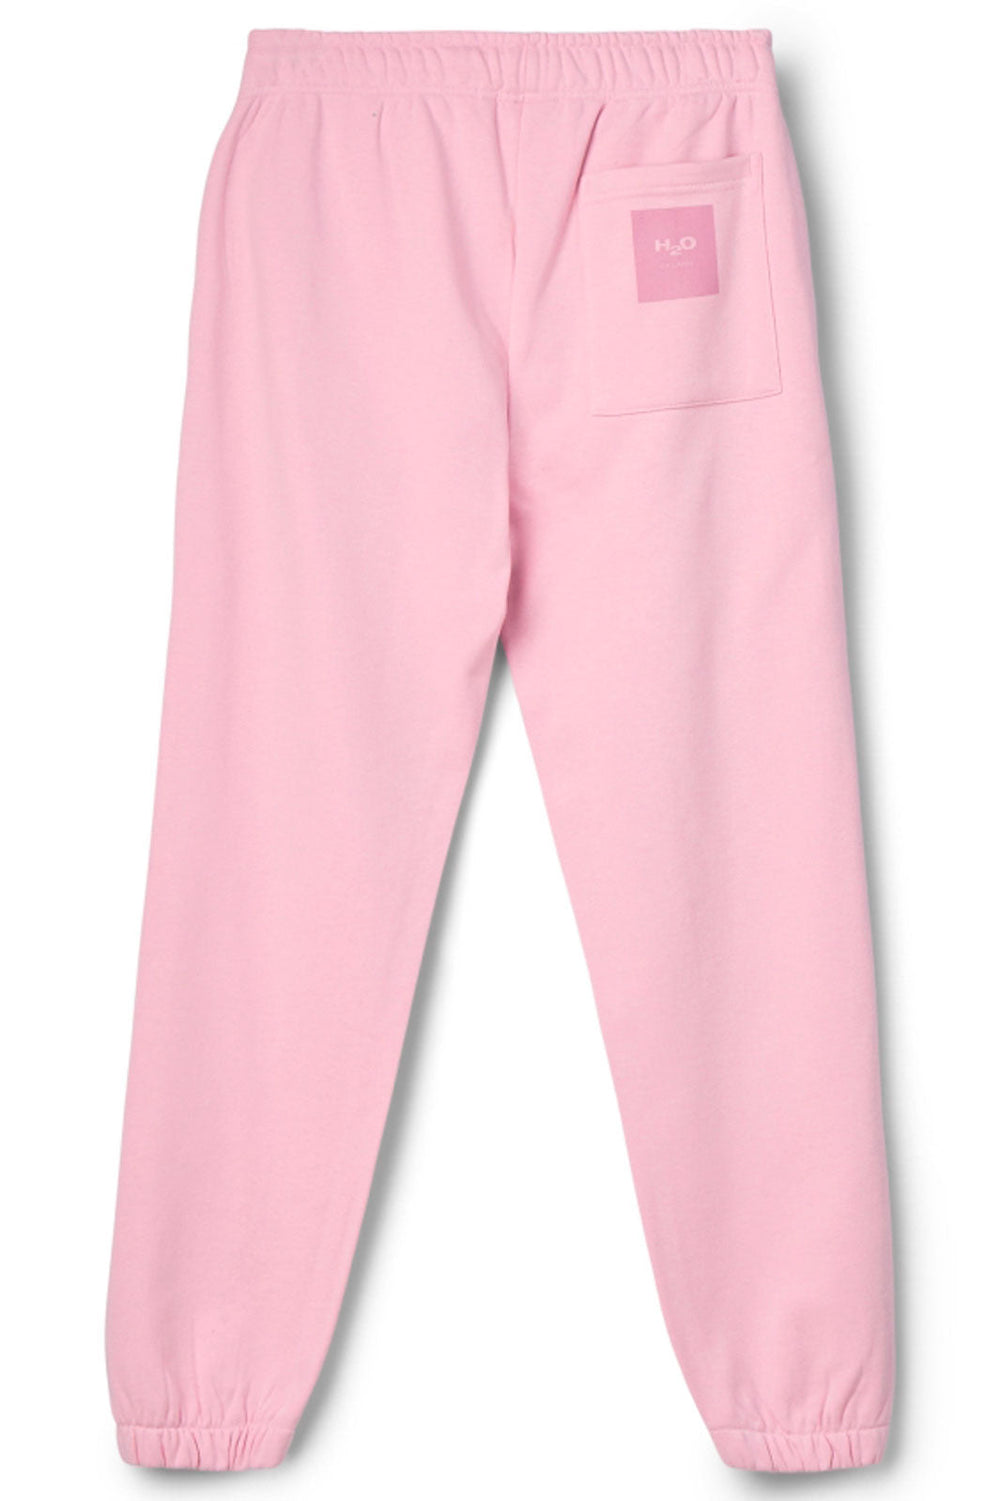 H2O - Lyø Organic Sweat Pants - Pink Lavender Sweatpants 